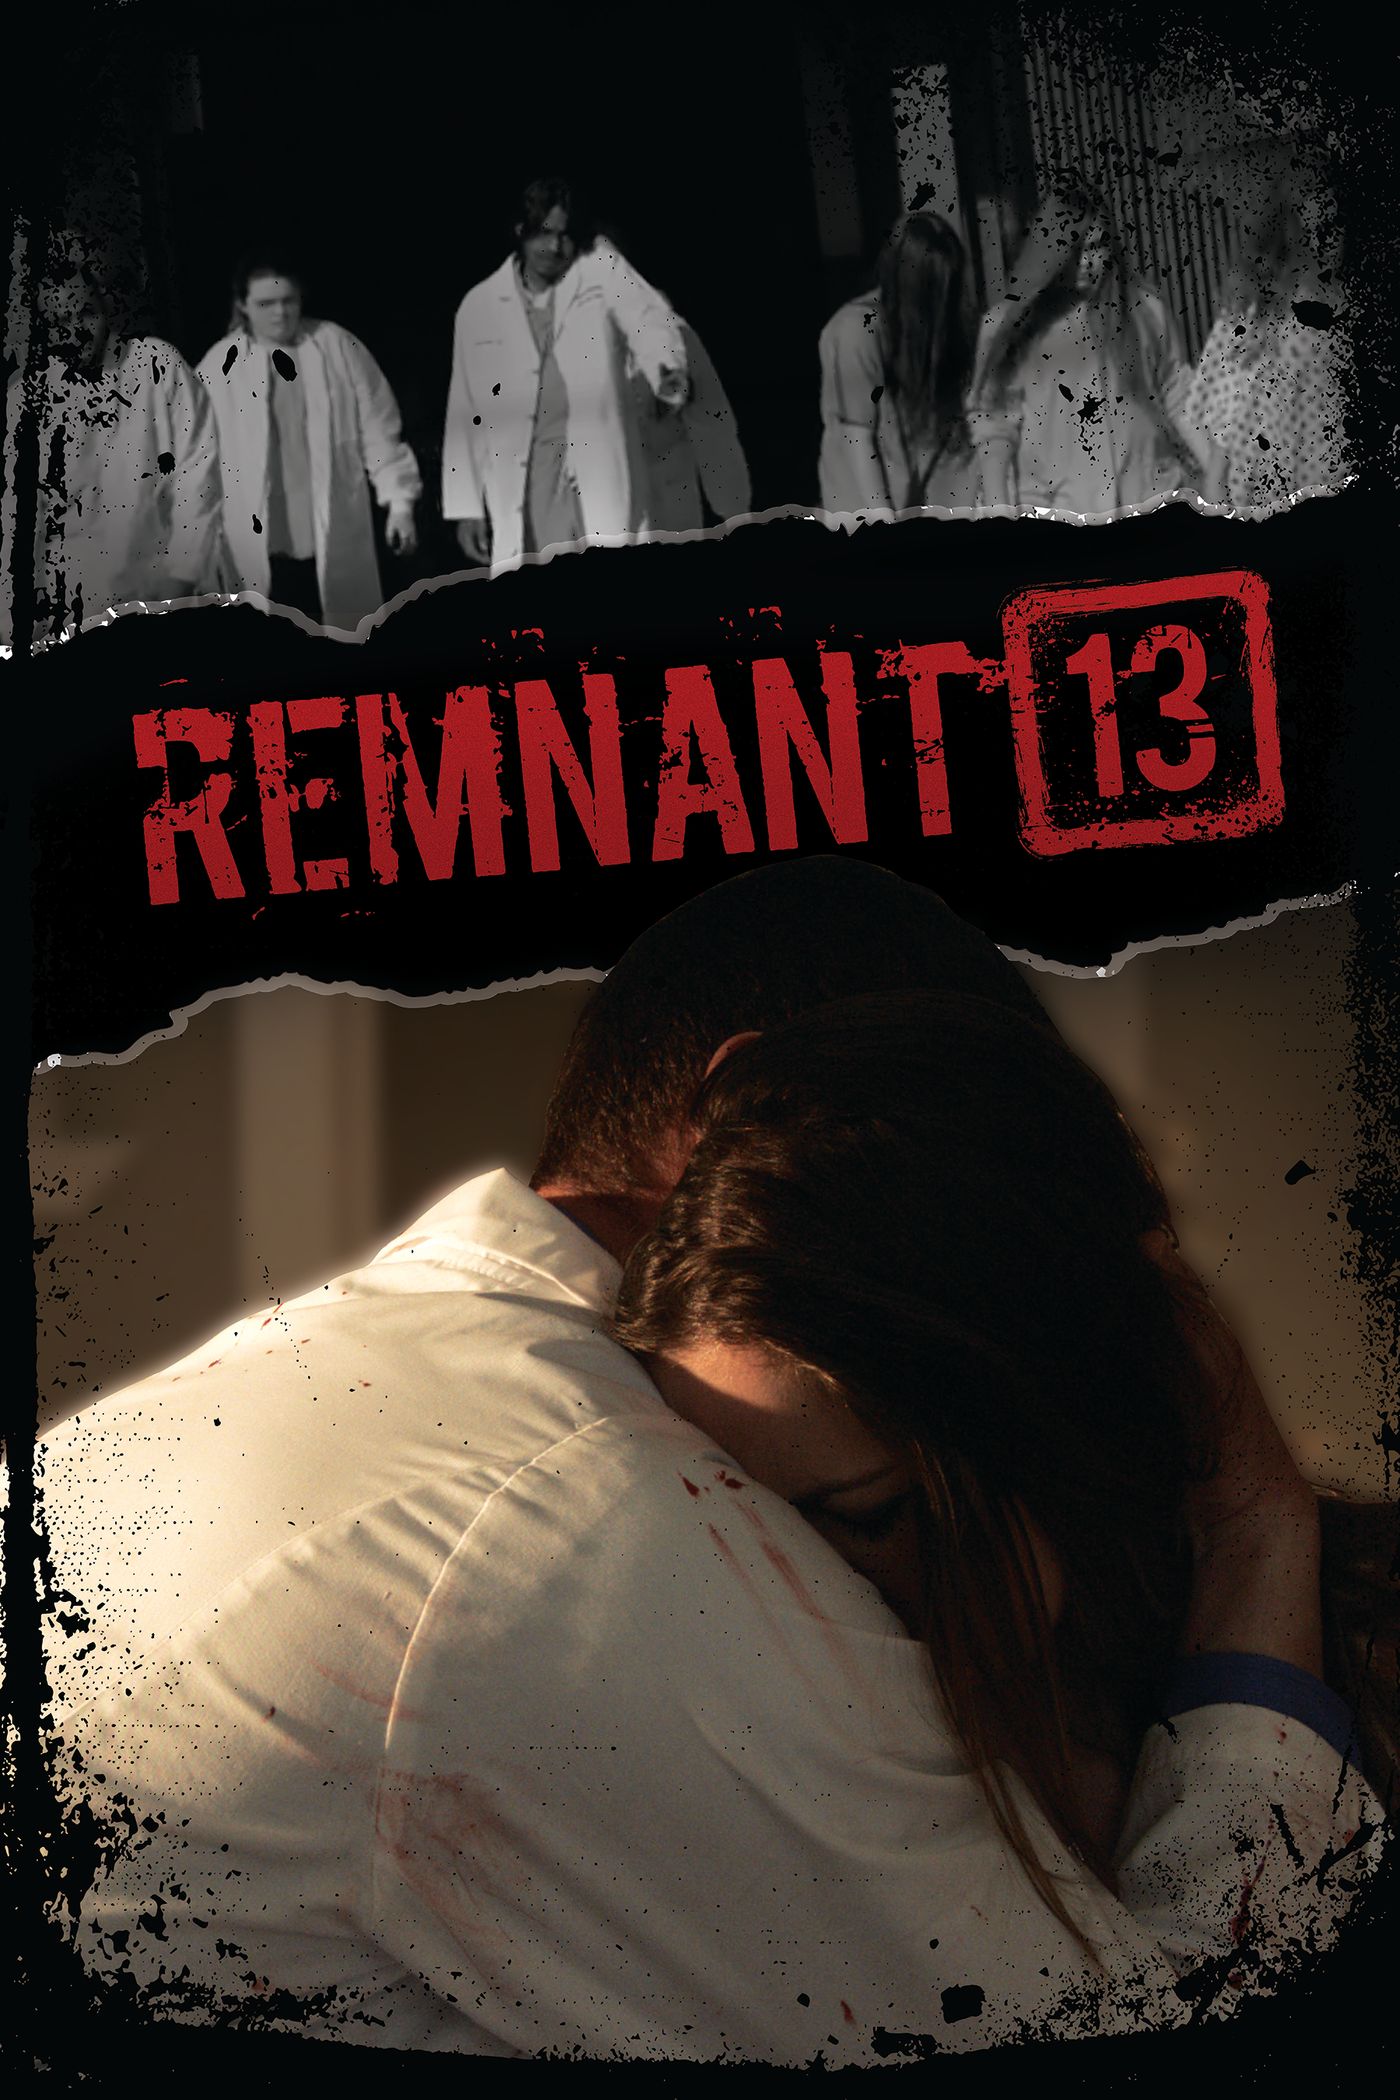 Remnant 13